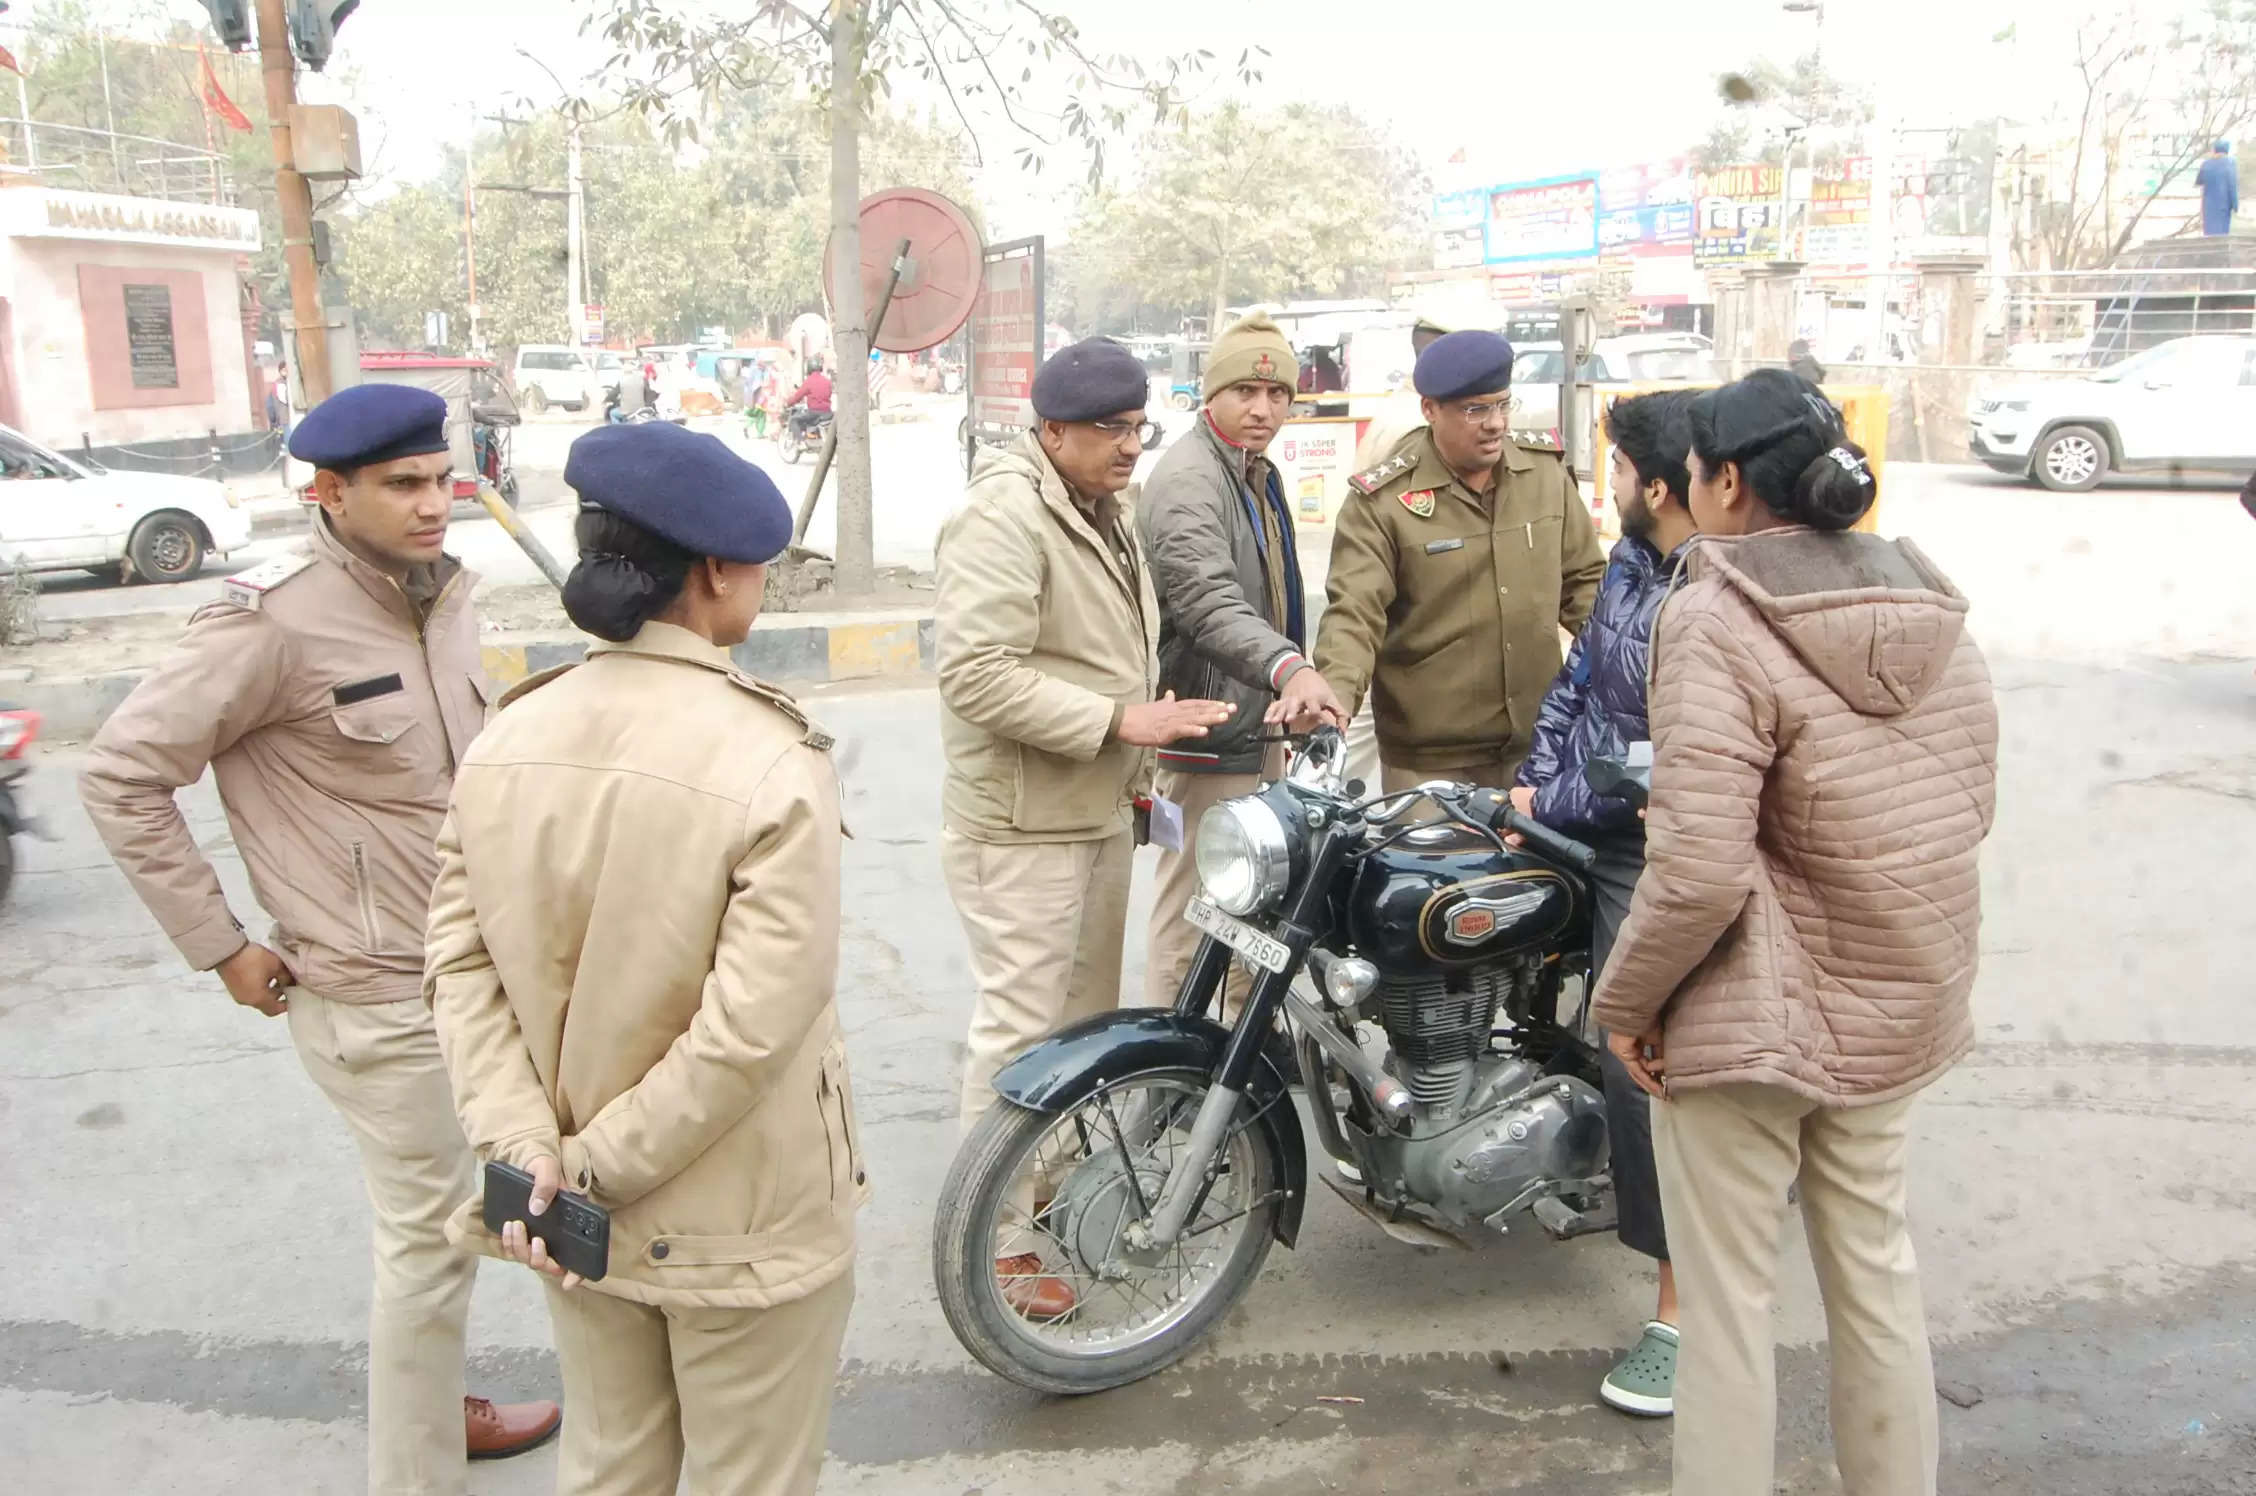  दूसरे दिन परशुराम मार्ग पर पुलिस ने चलाया चालान काटने का अभियान